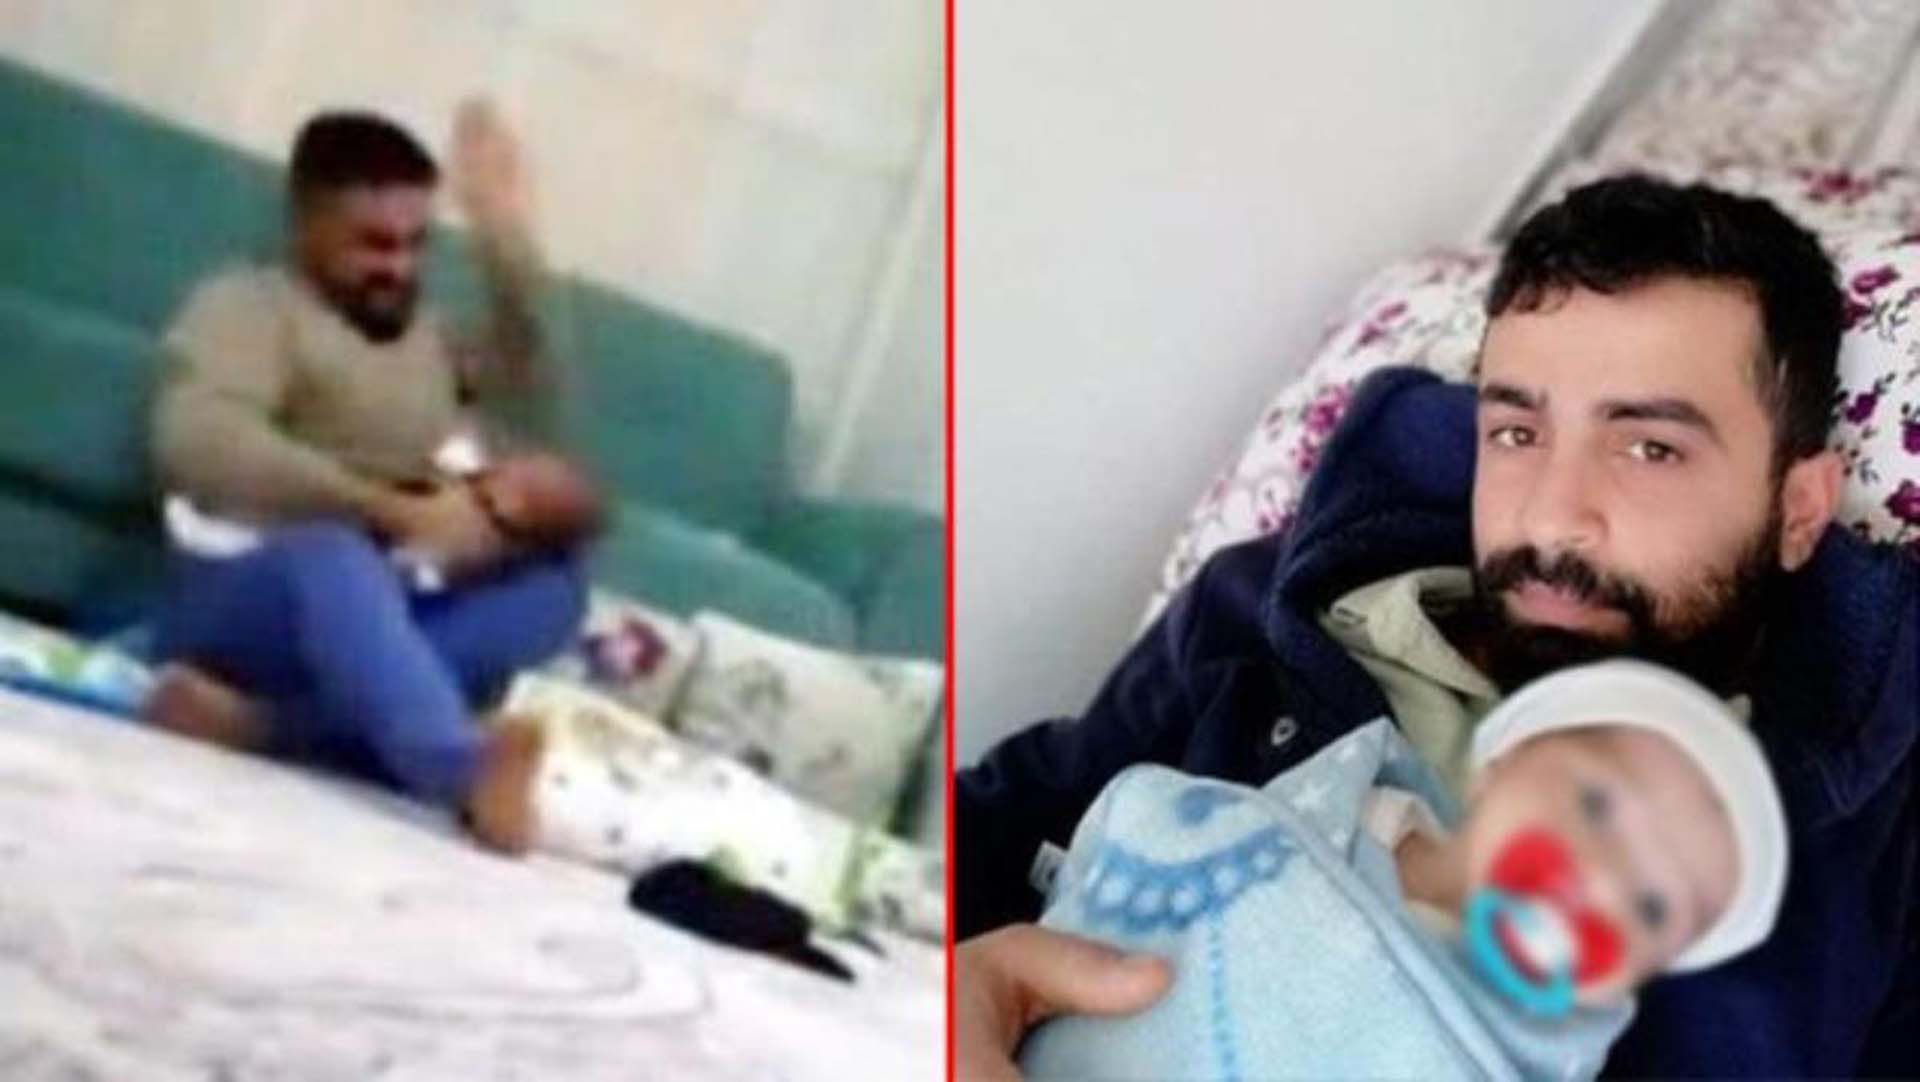 Gaziantep'te 3 aylık bebeği Cihan Göç'e şiddet uygulamıştı! Yunus Göç'ün ifadesi ortaya çıktı: Bir anlık sinirle darp ettim 